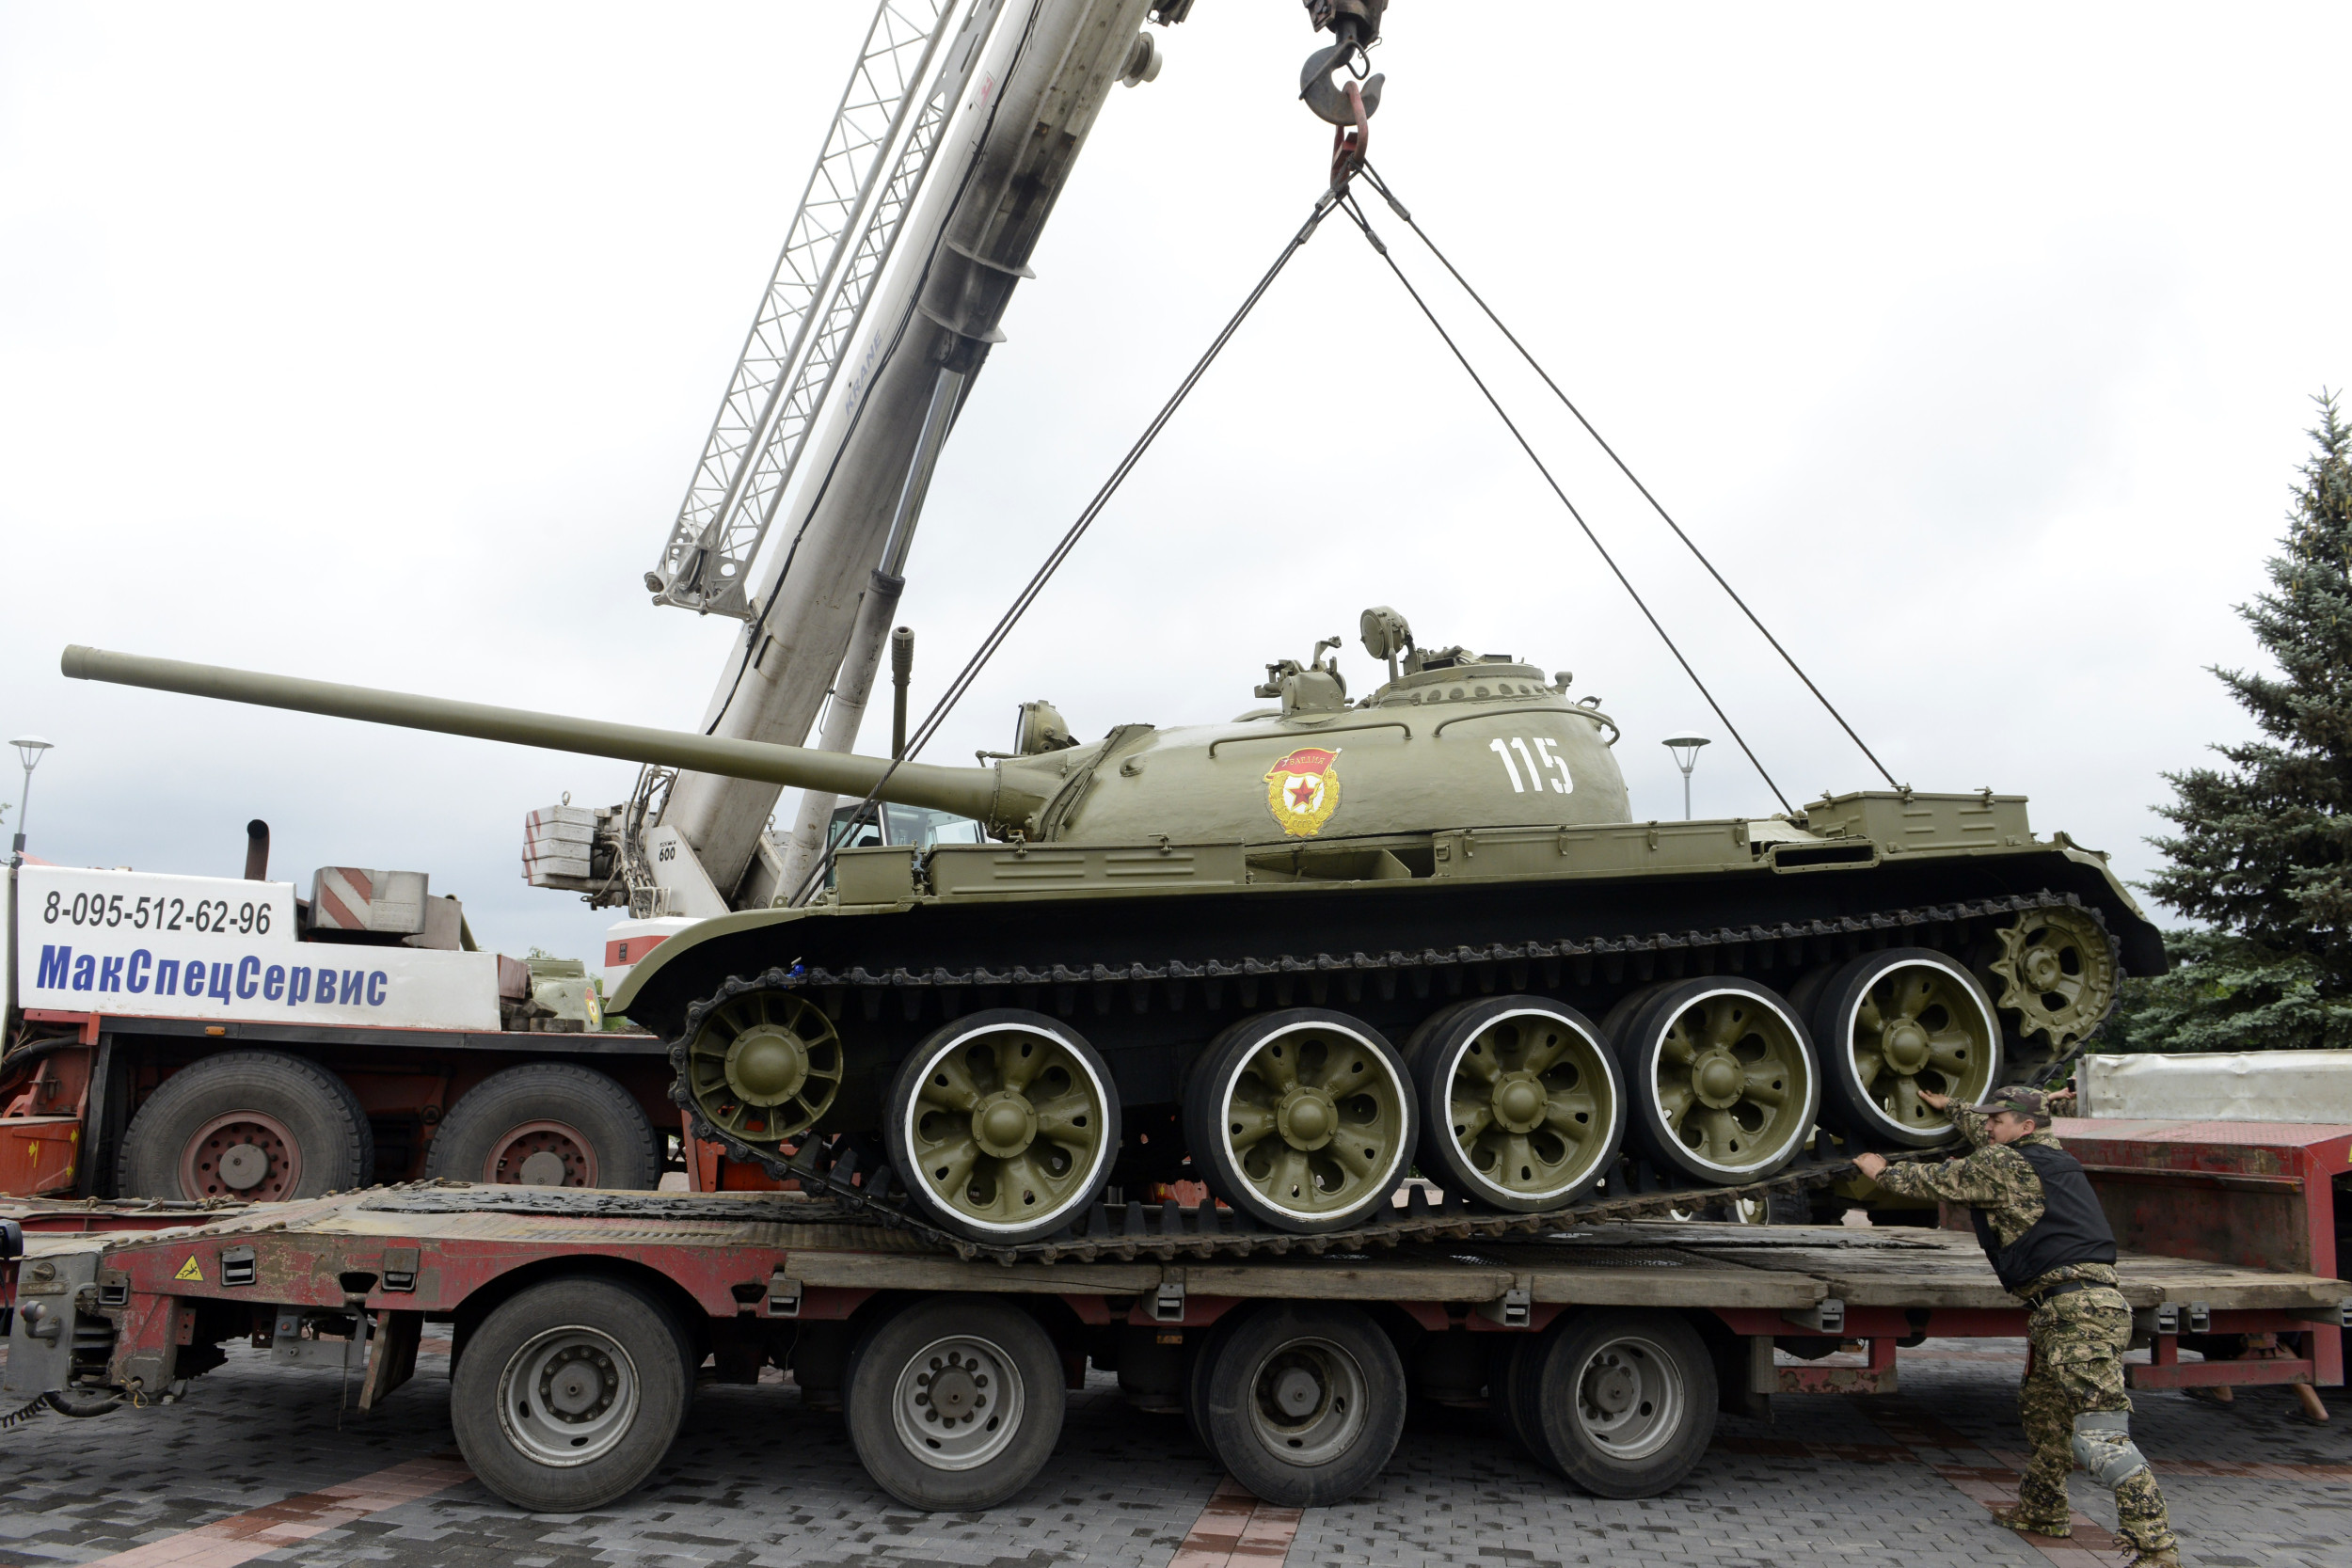 russia ukraine war old soviet union tanks